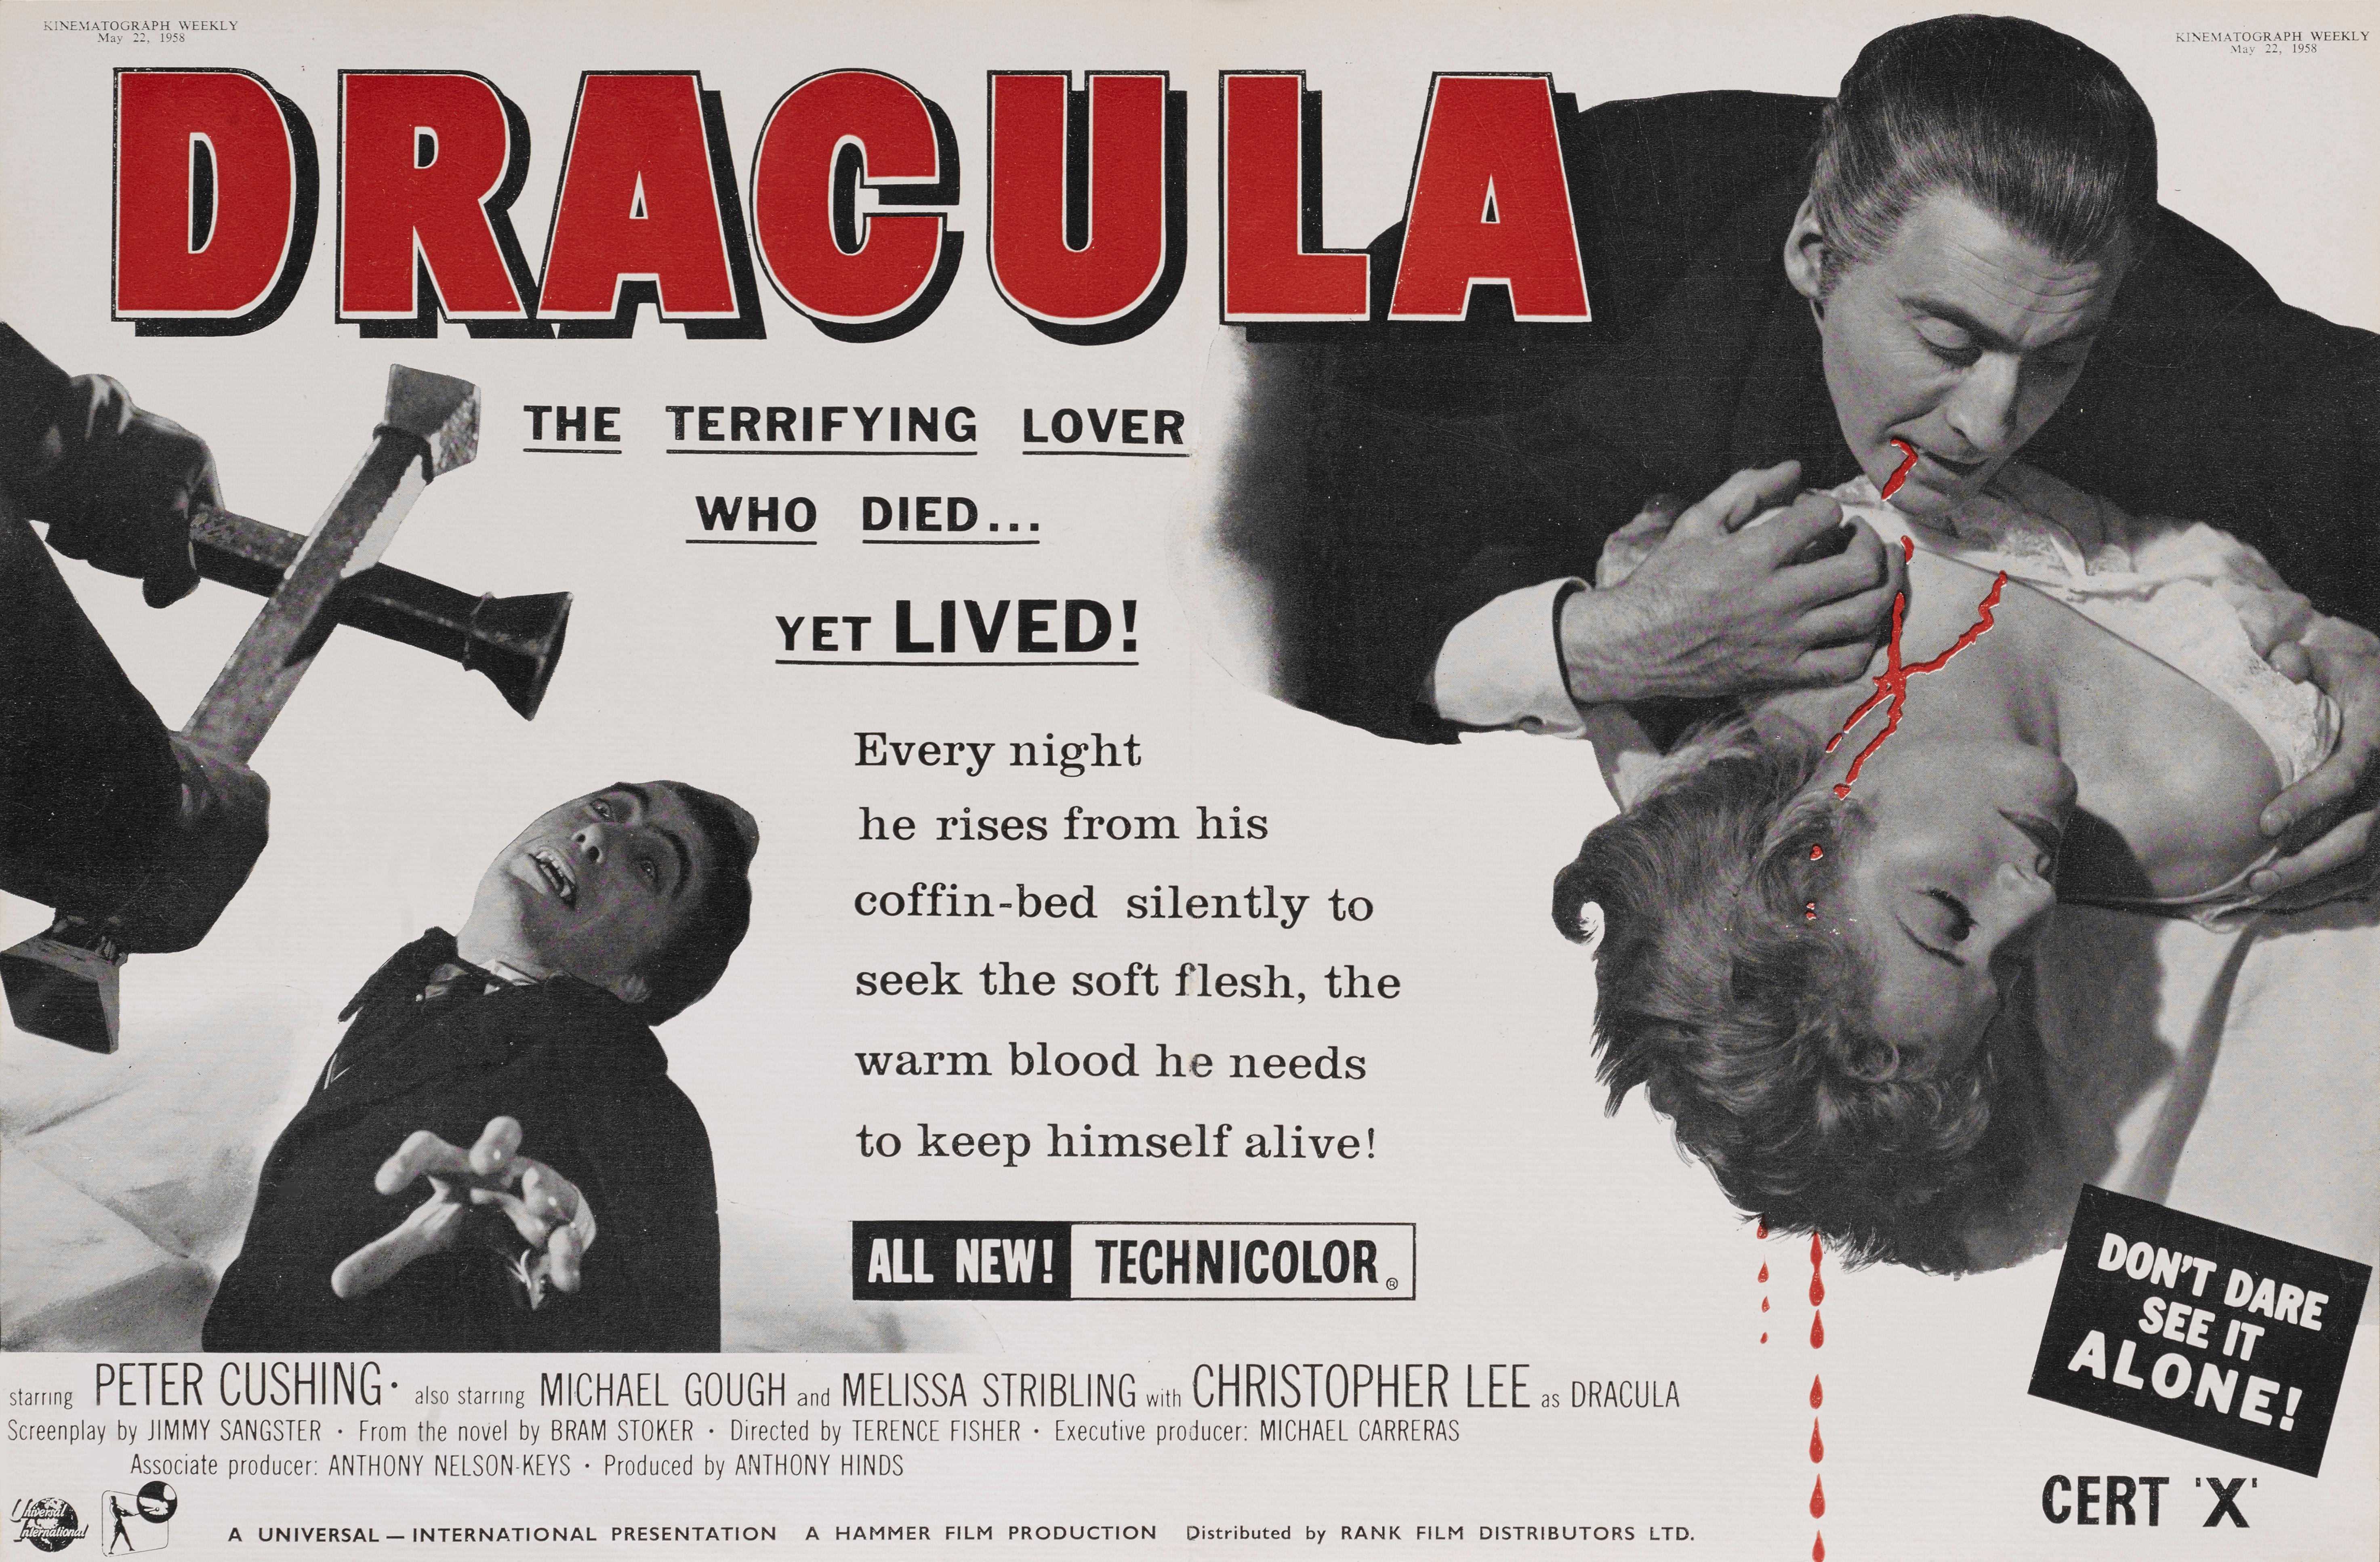 Original britische Handelsanzeige aus der Wochenzeitschrift Kinematograph, 22. Mai 1958.
Hammer-Horrorfilme gehören zu den begehrtesten Sammlerstücken, und Dracula, der erste Film, ist besonders begehrt.
Regie führte Terence Fisher, die